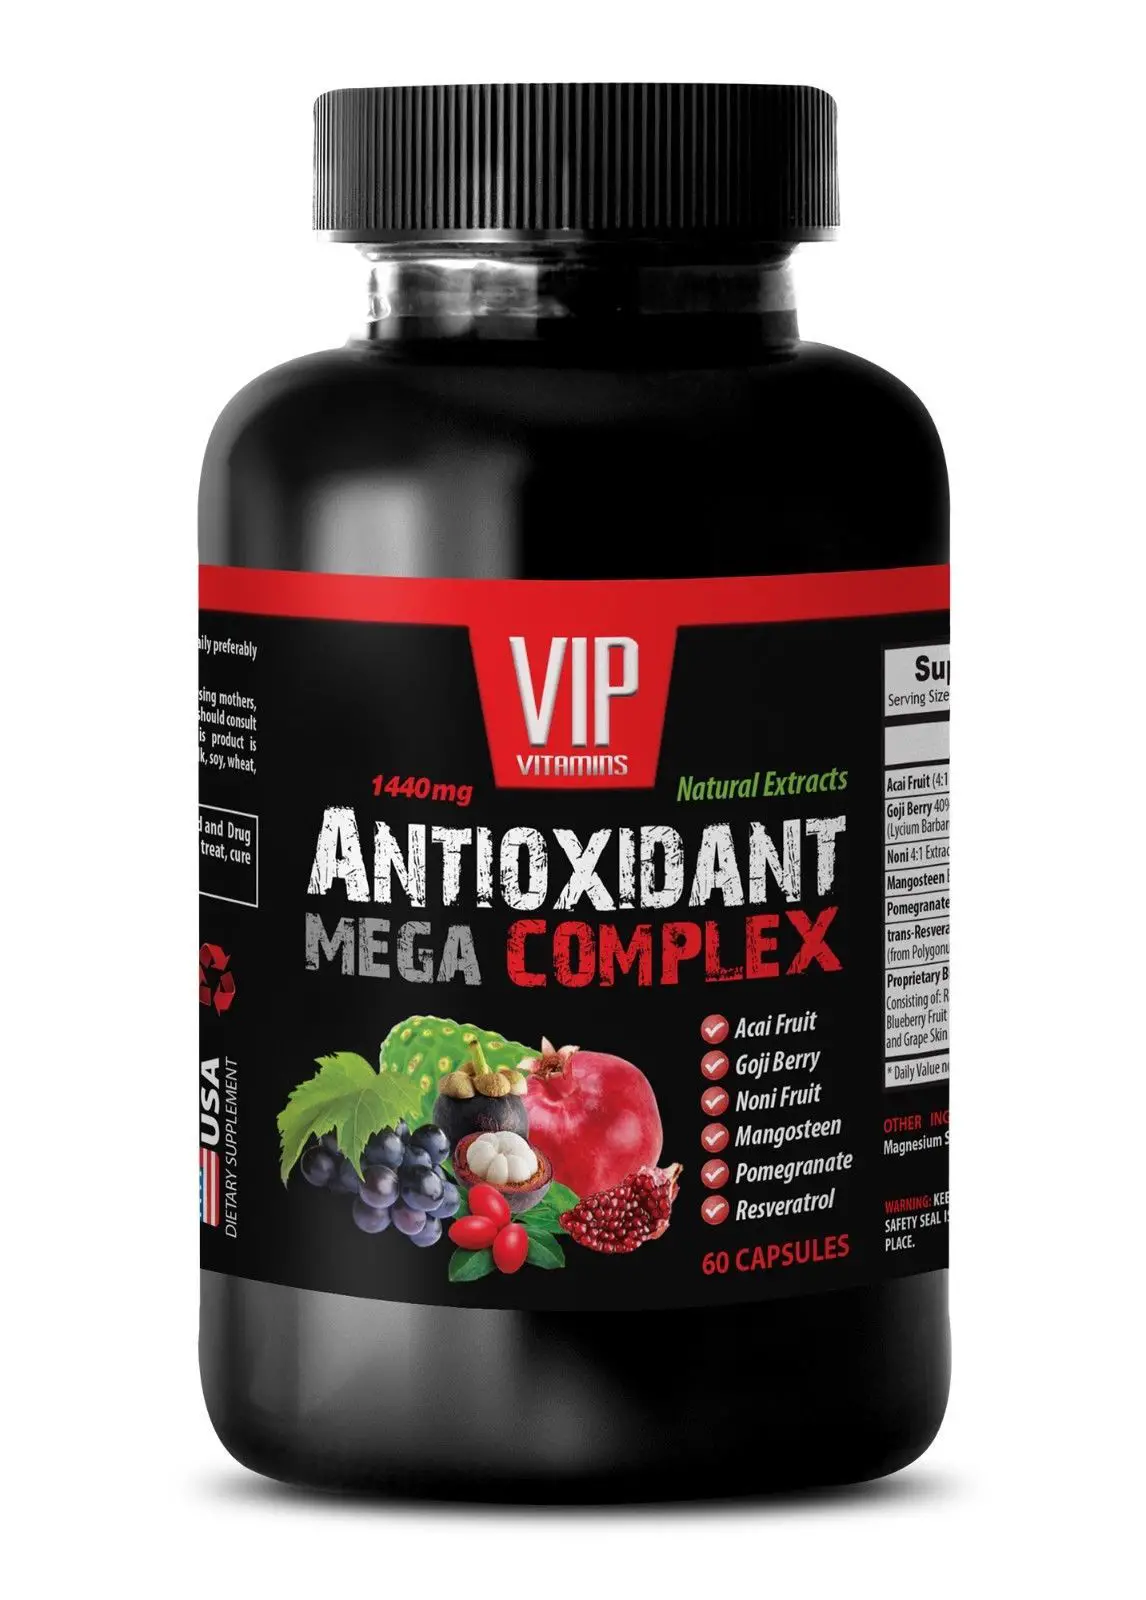 Antioxidant supplement best seller